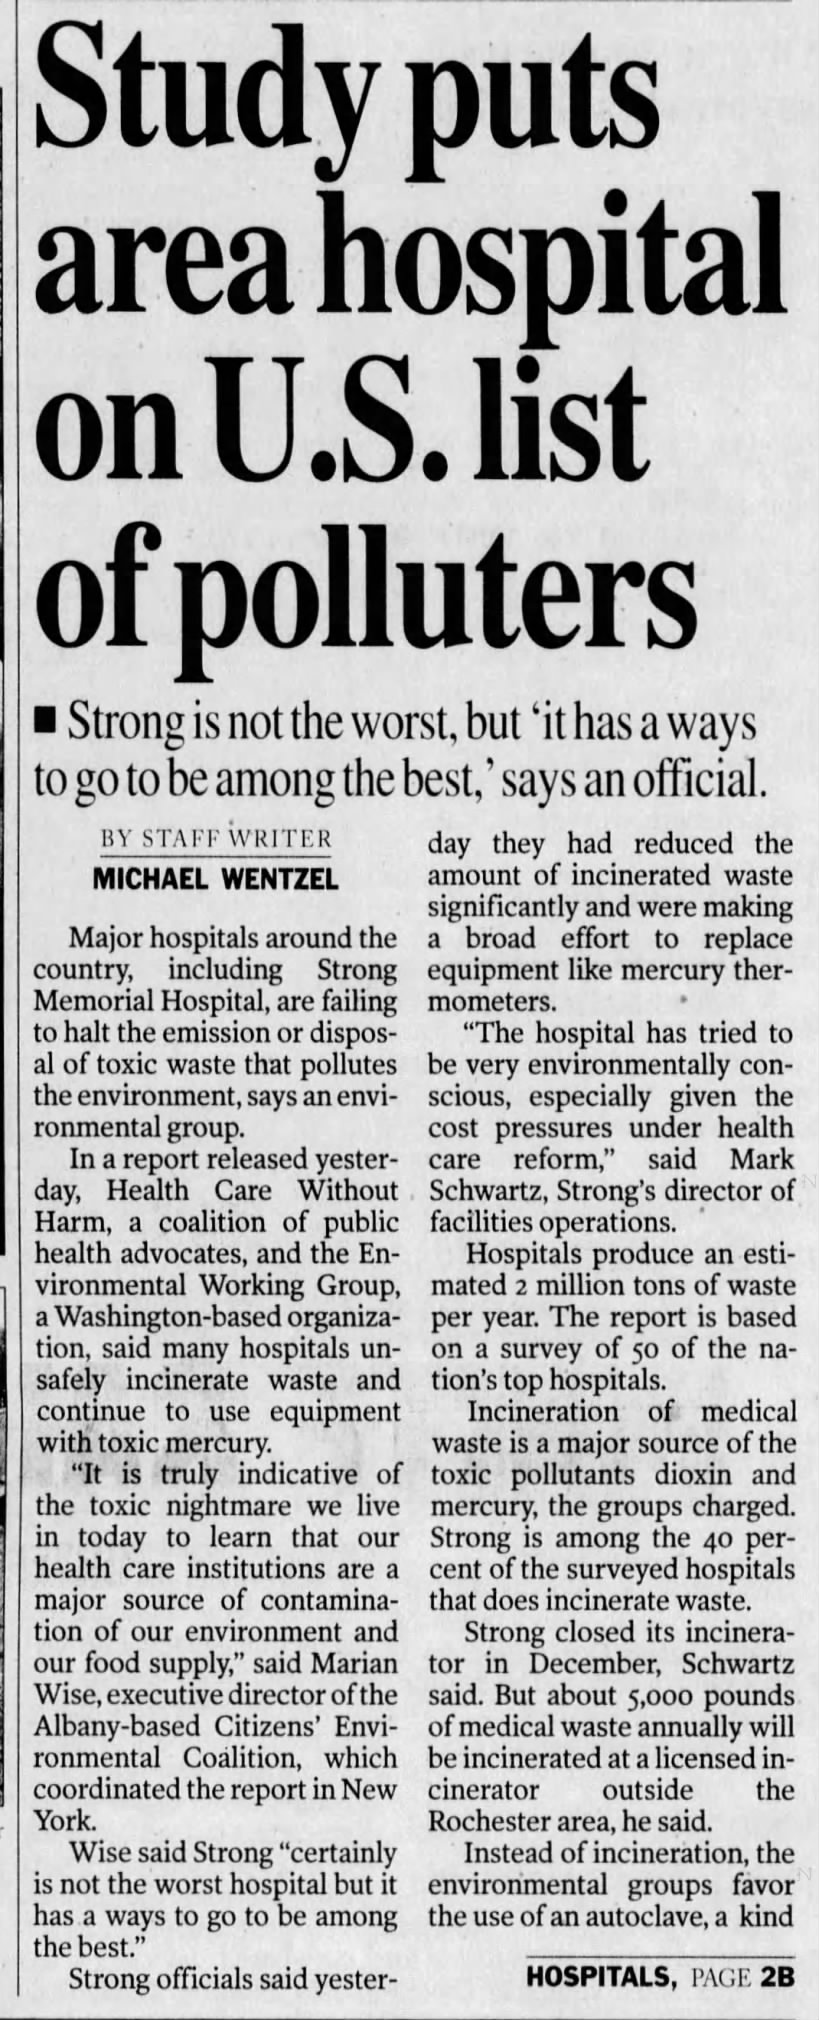 Study puts area hospital on U.S. List of polluters